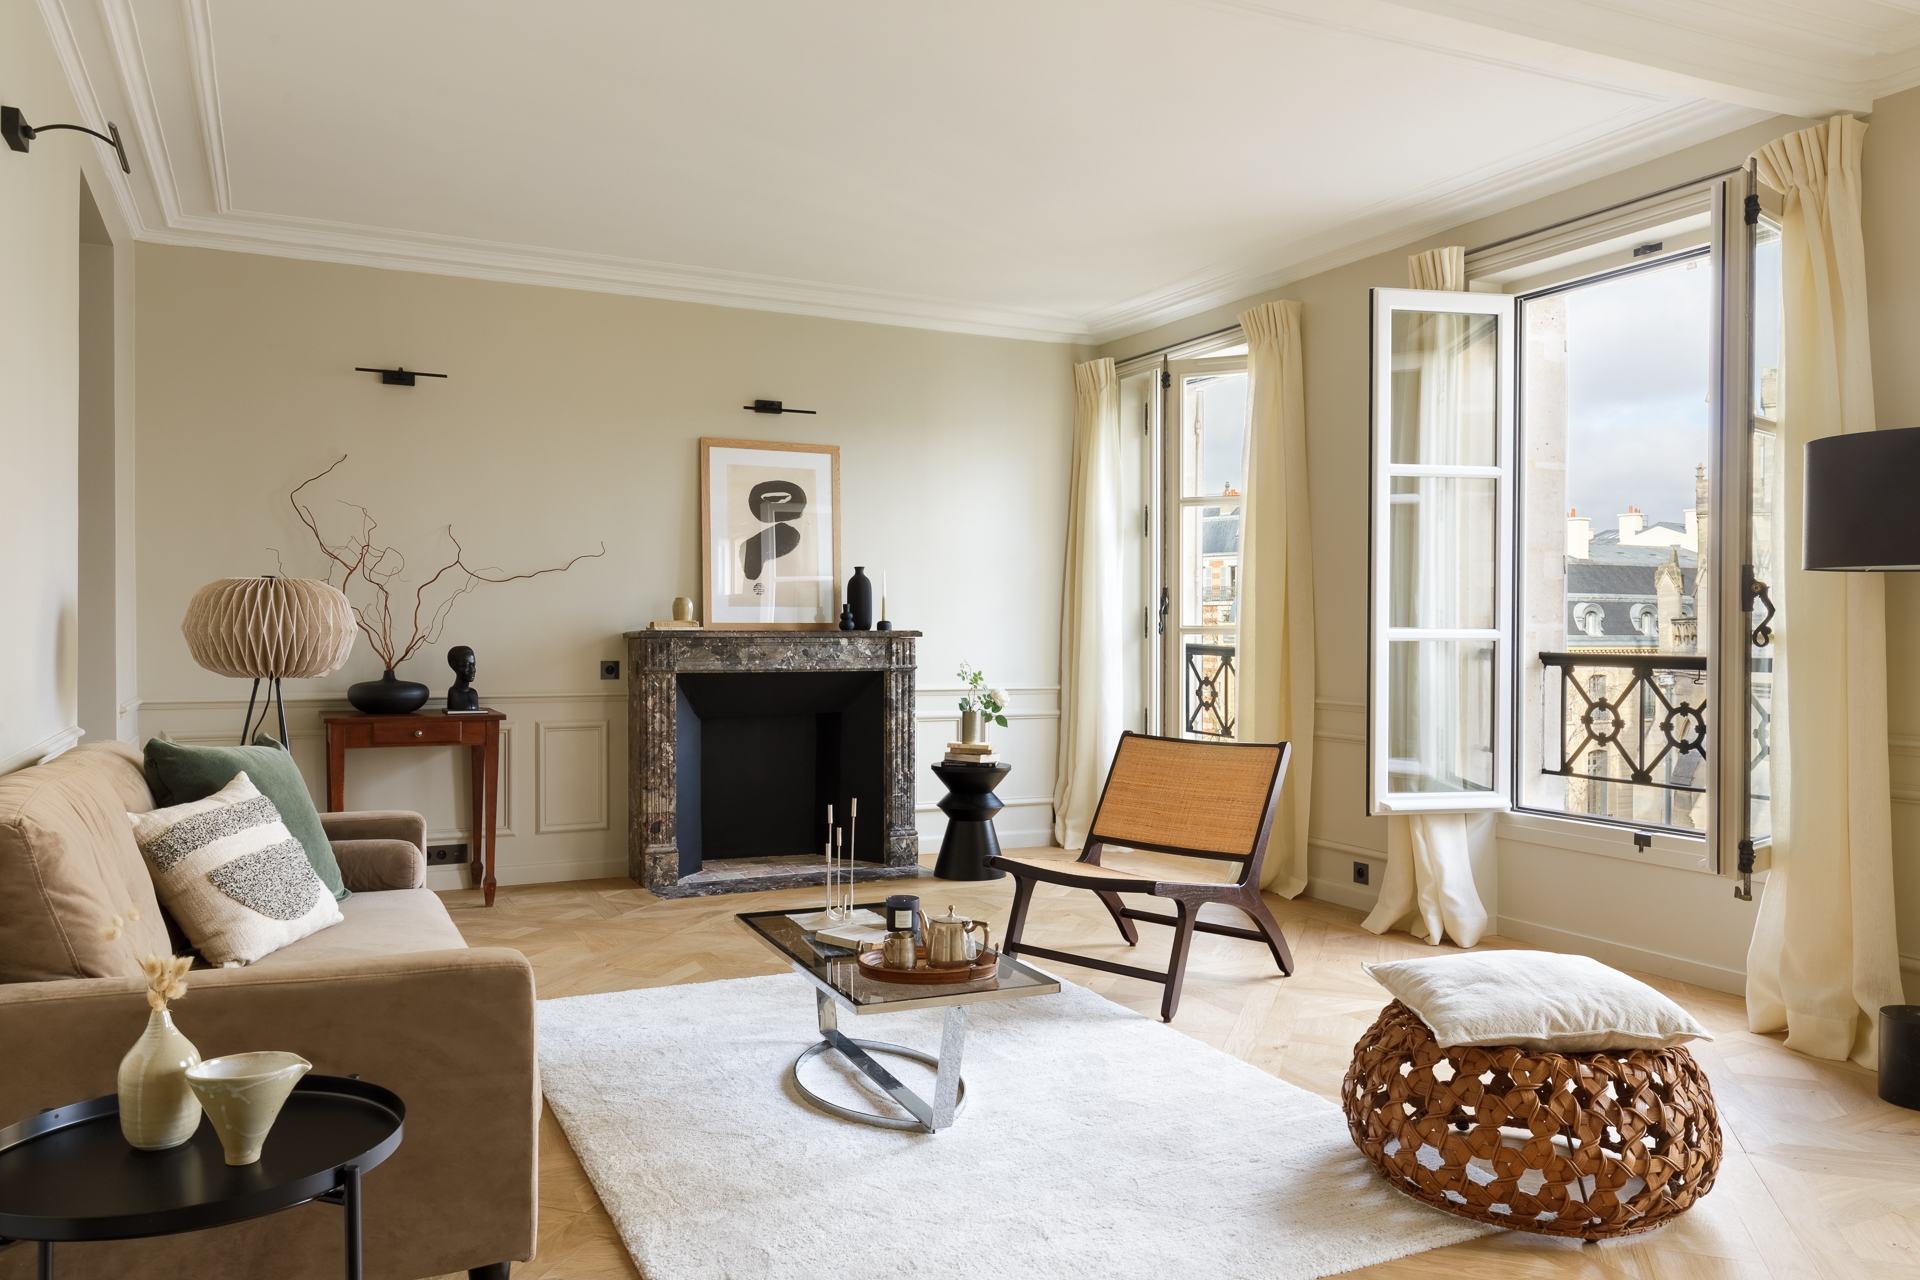 Home Staging Interieur parisien décoration salon cheminée parquet